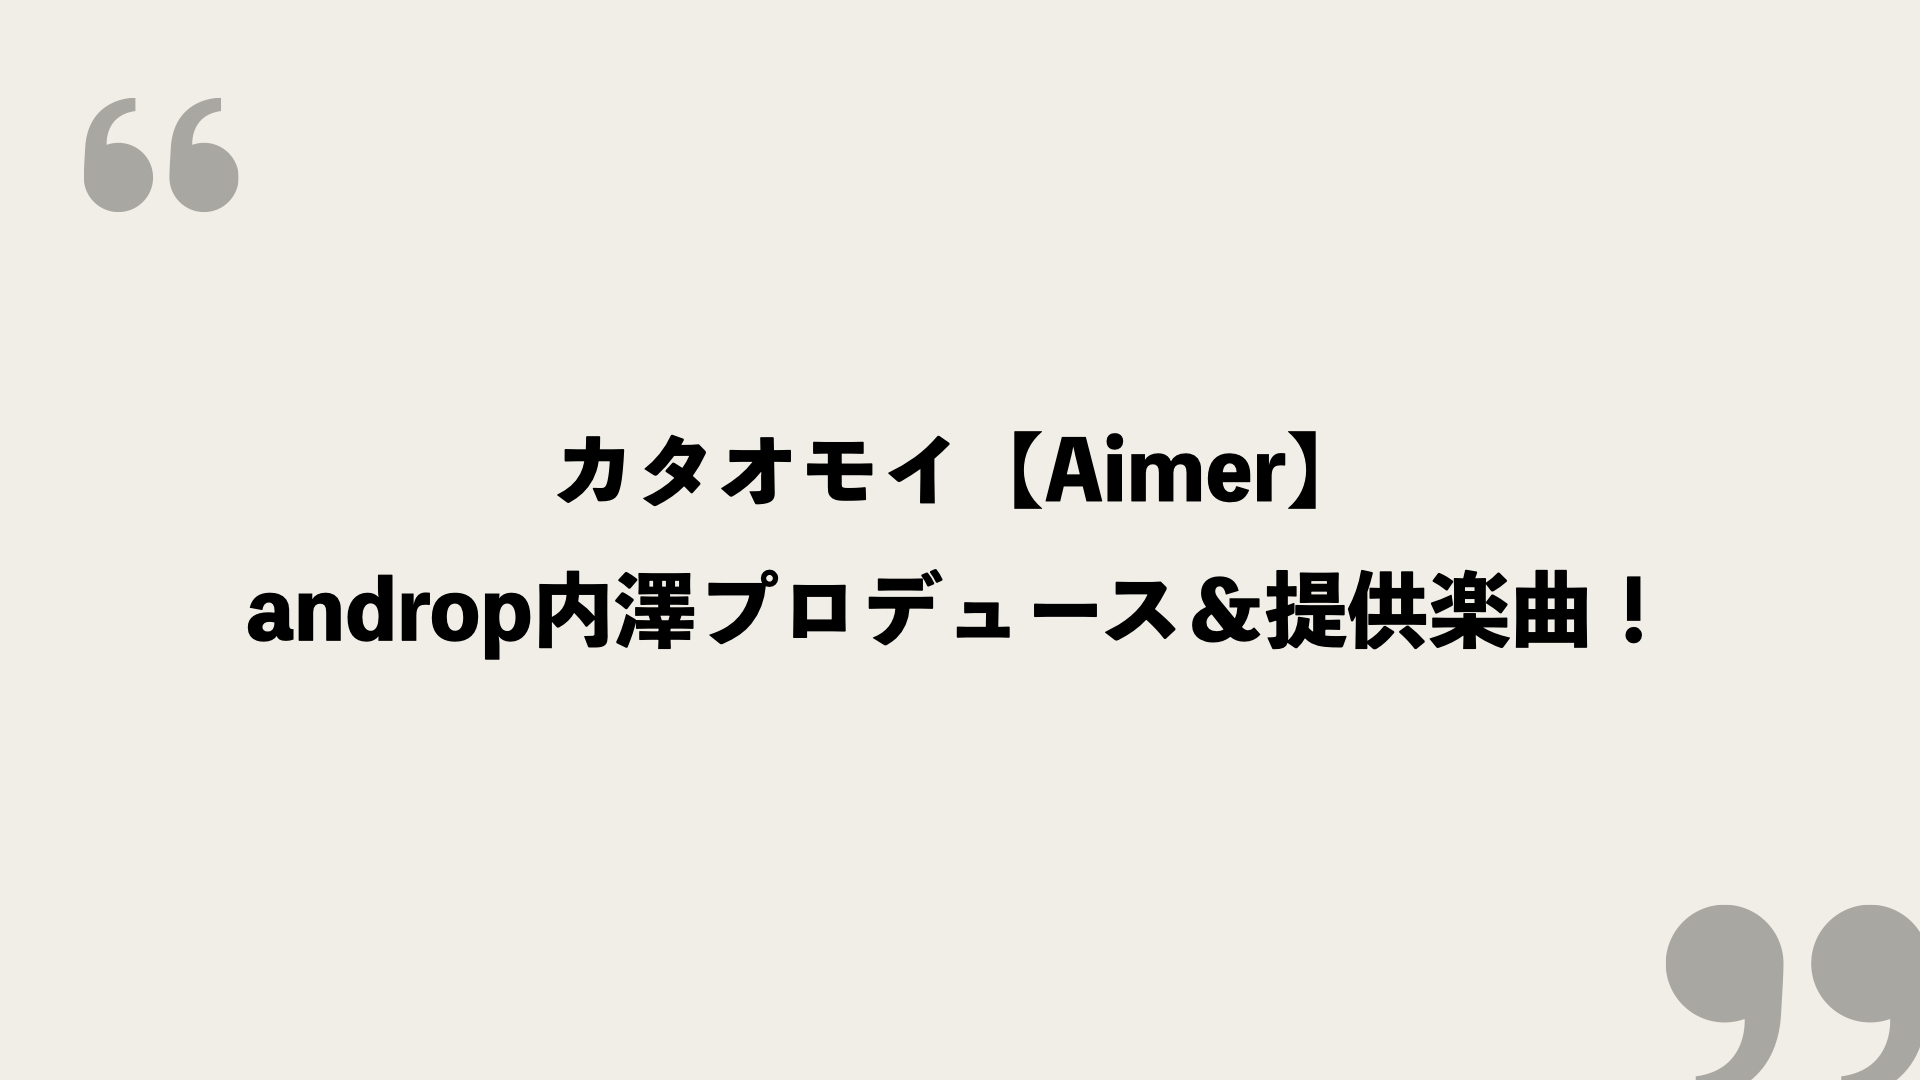 カタオモイ Aimer 歌詞の意味を考察 Androp内澤プロデュース 提供楽曲 Framu Media